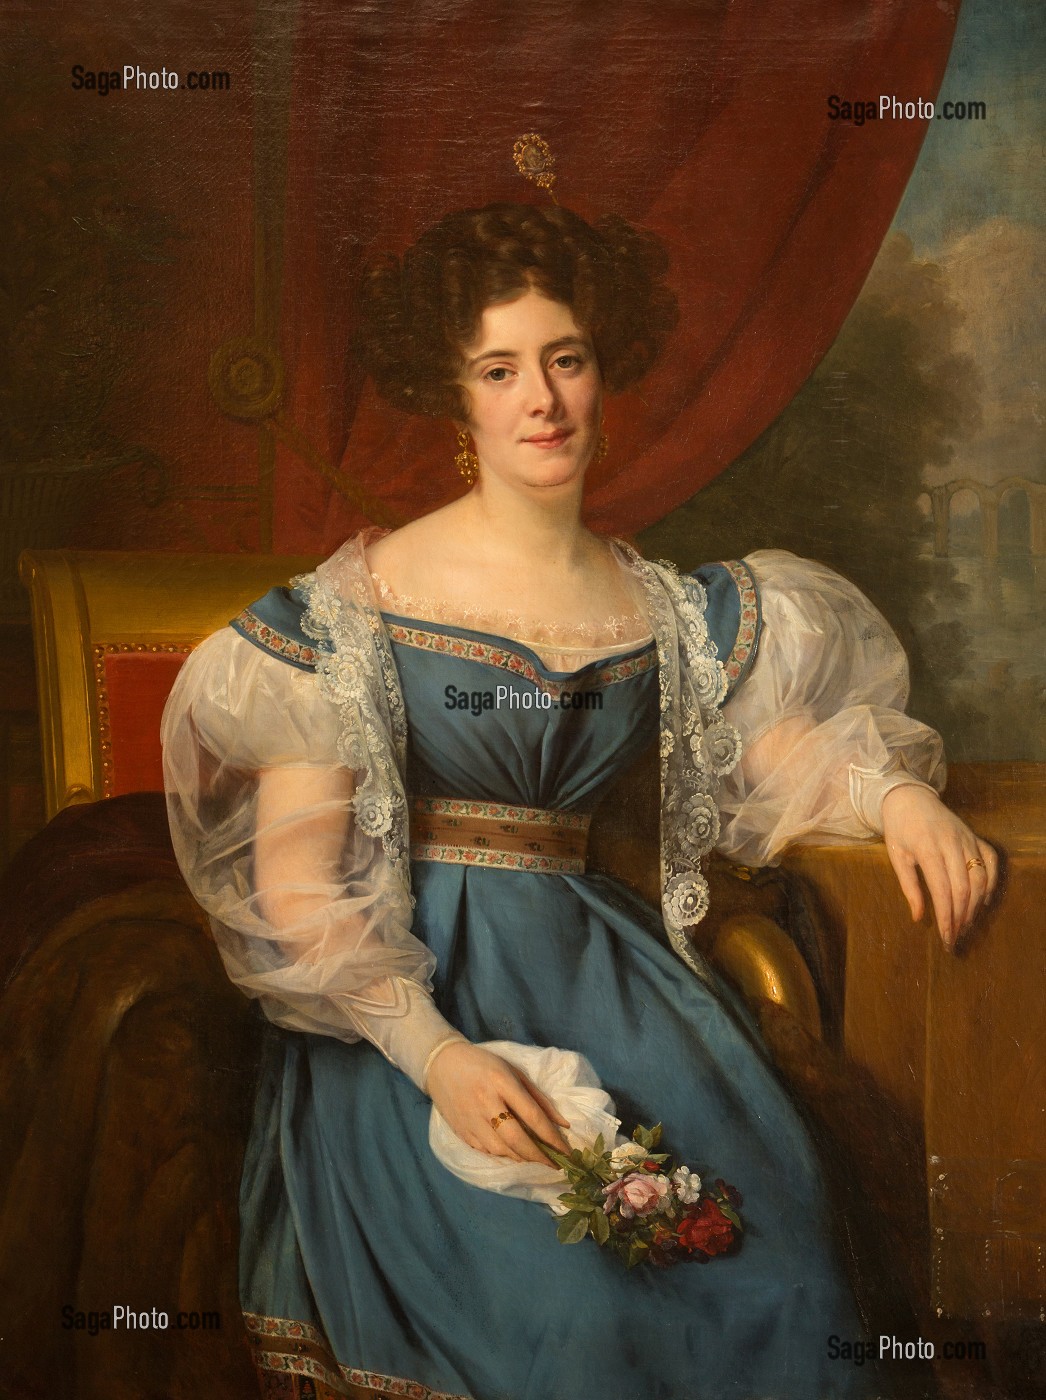 ALICIA DE ROCHECHOUART DE MORTEMART (1800-1887), DUCHESSE DE NOAILLES PAR SON MARIAGE AVEC PAUL DE NOAILLES, TABLEAU DE LOUIS HERSENT, SALLE DE BILLARD, CHATEAU DE MAINTENON, EURE-ET-LOIR (28), FRANCE 